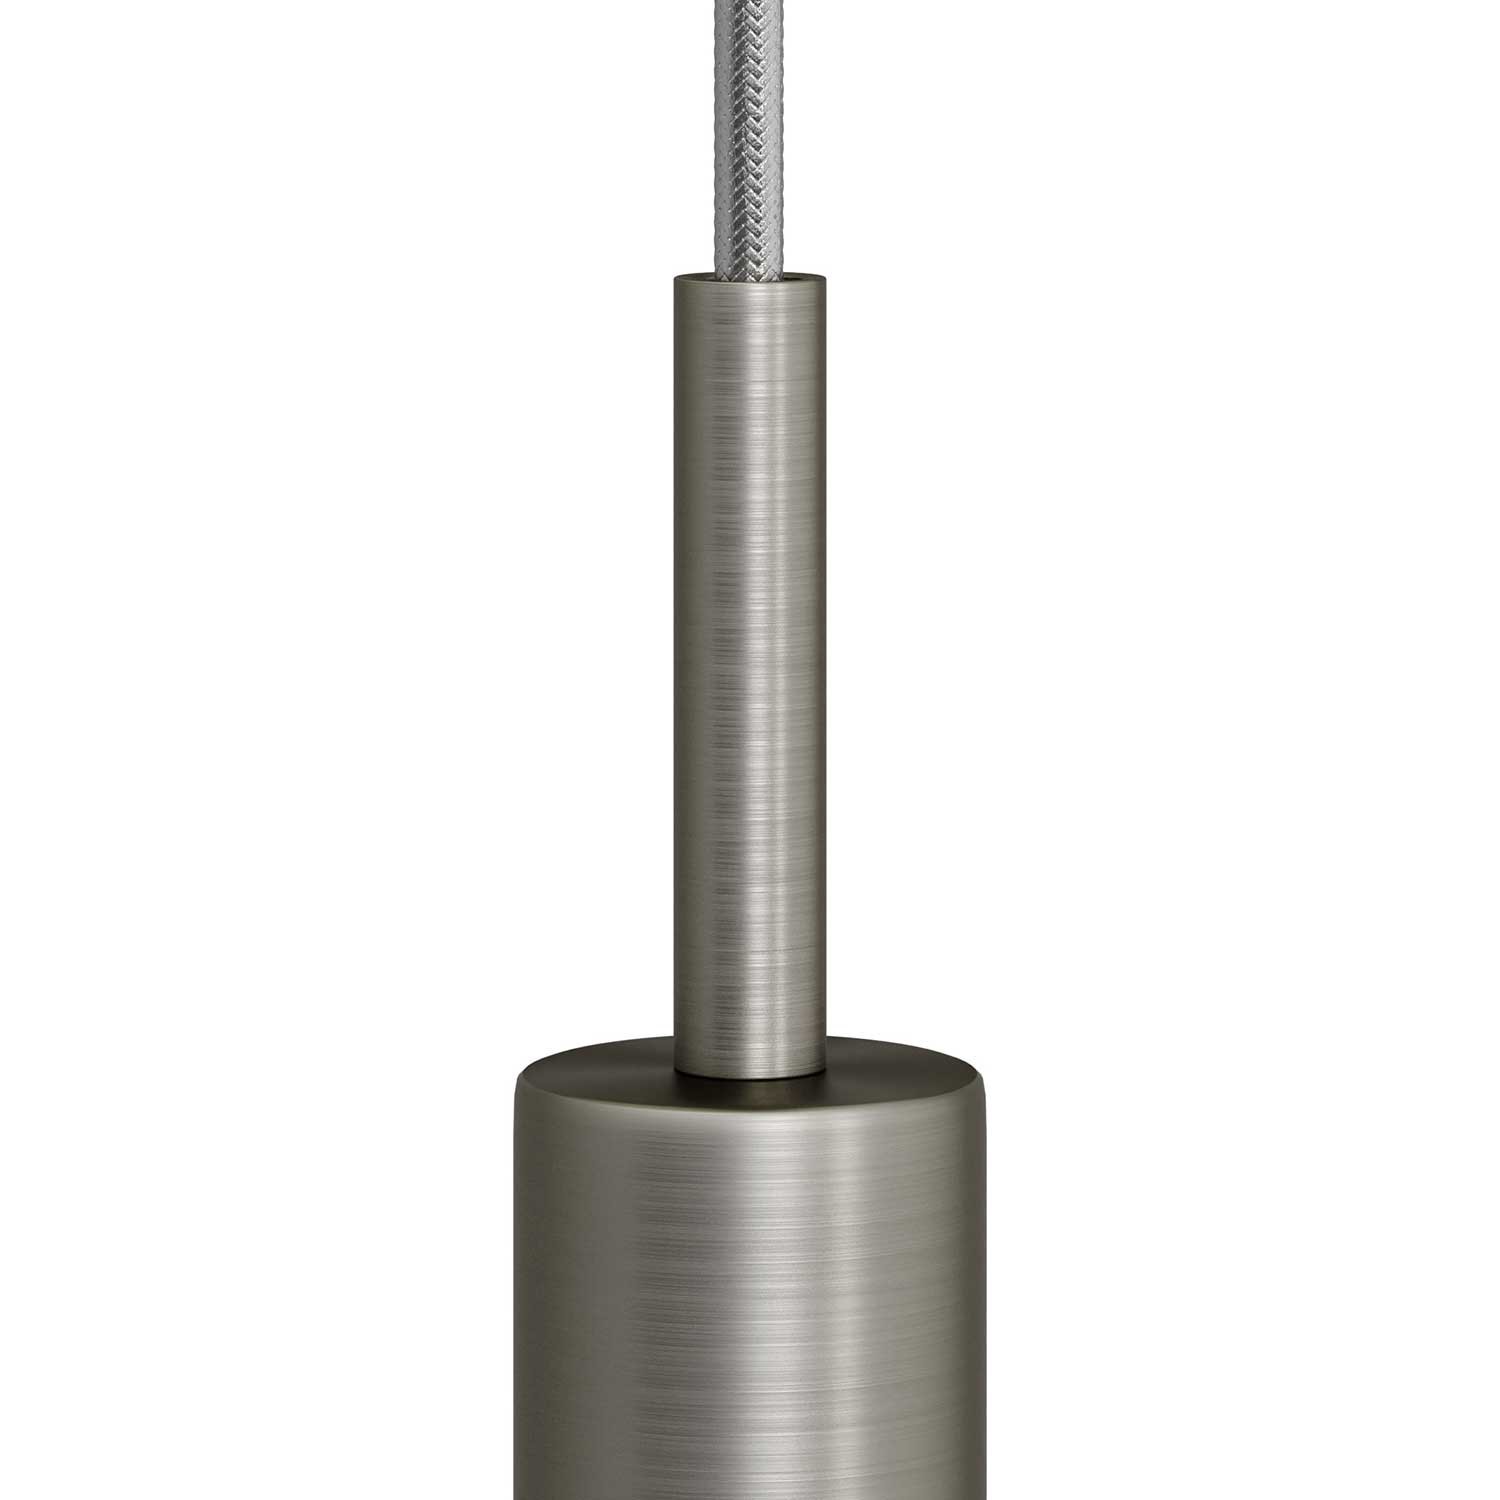 Cilindrische metalen kabelklem van 7 cm, compleet met pendelbuis, moer en ring